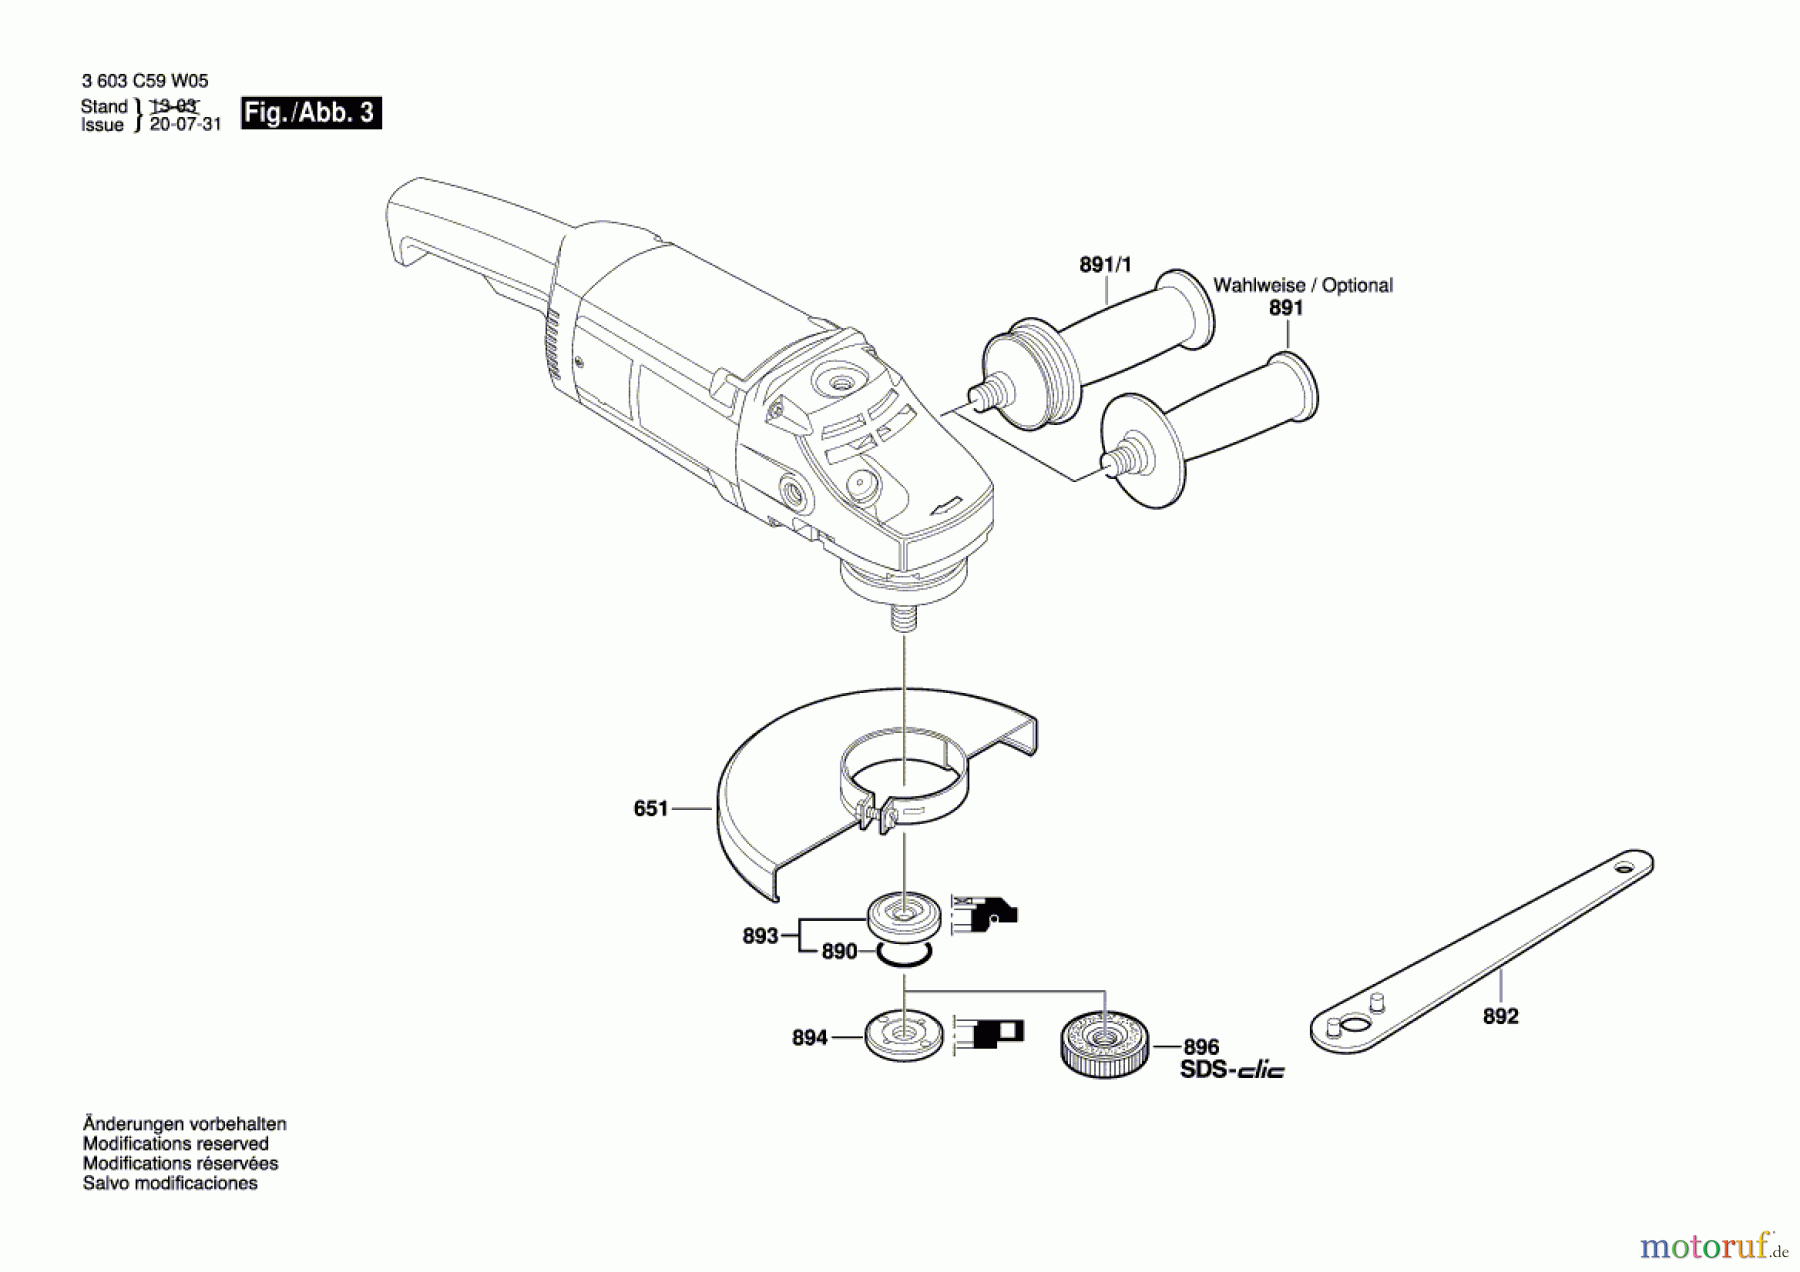  Bosch Werkzeug Winkelschleifer PWS 20-230 Seite 3